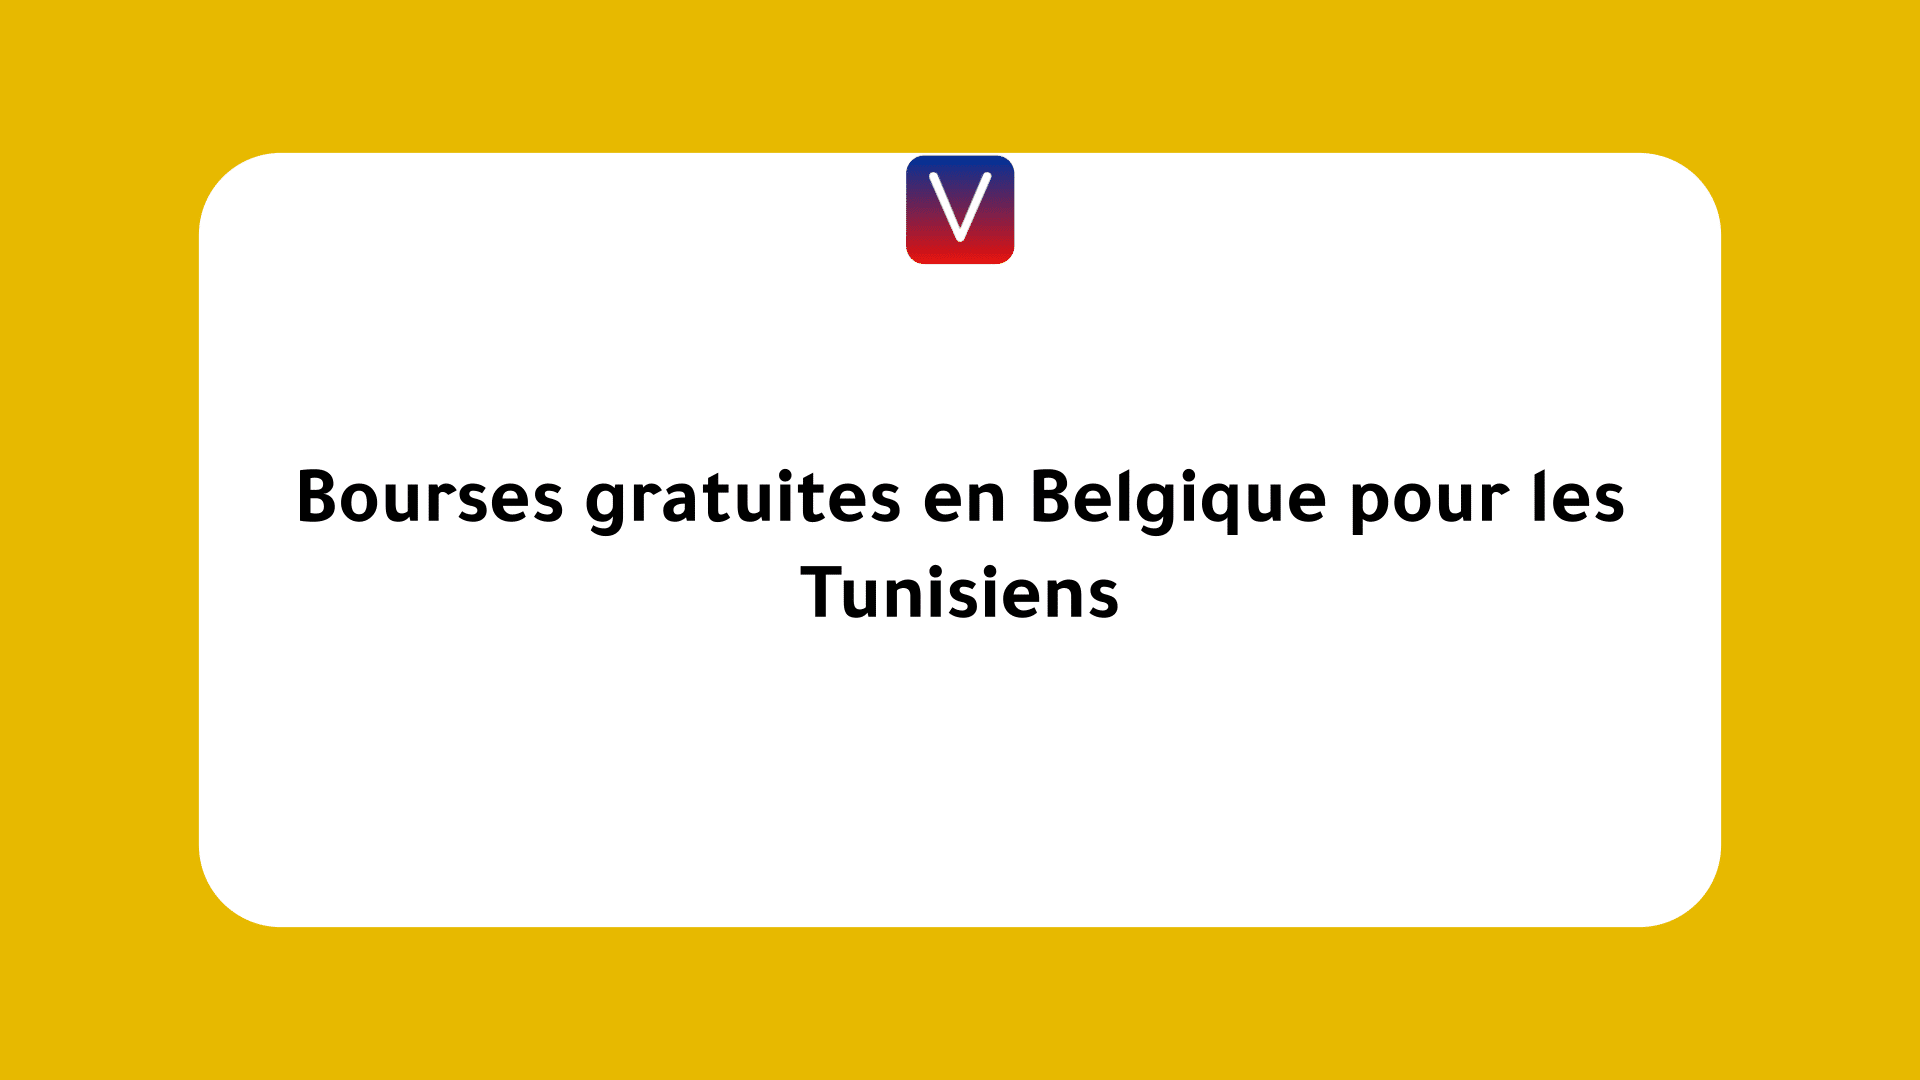 Bourses gratuites en Belgique pour les Tunisiens